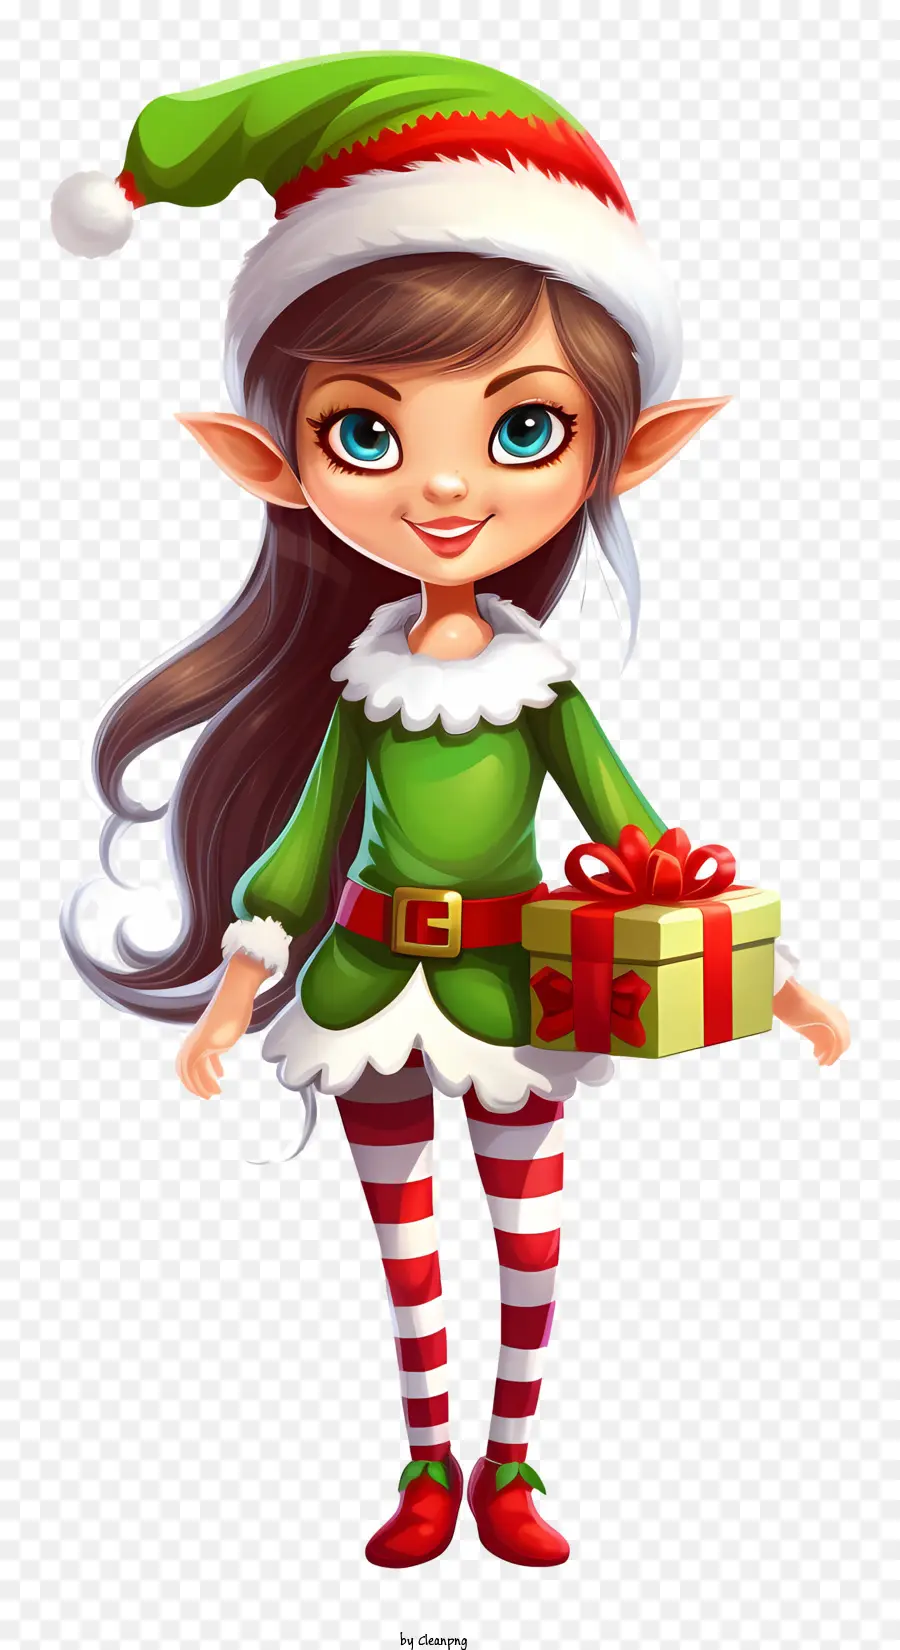 Niedliche rothäutige Elf rotes Haar Elf Grüne Hut Elf Rot und Weiß gestreiftes Hemd - Netter Elf mit rotem Haar, das Geschenk hält,